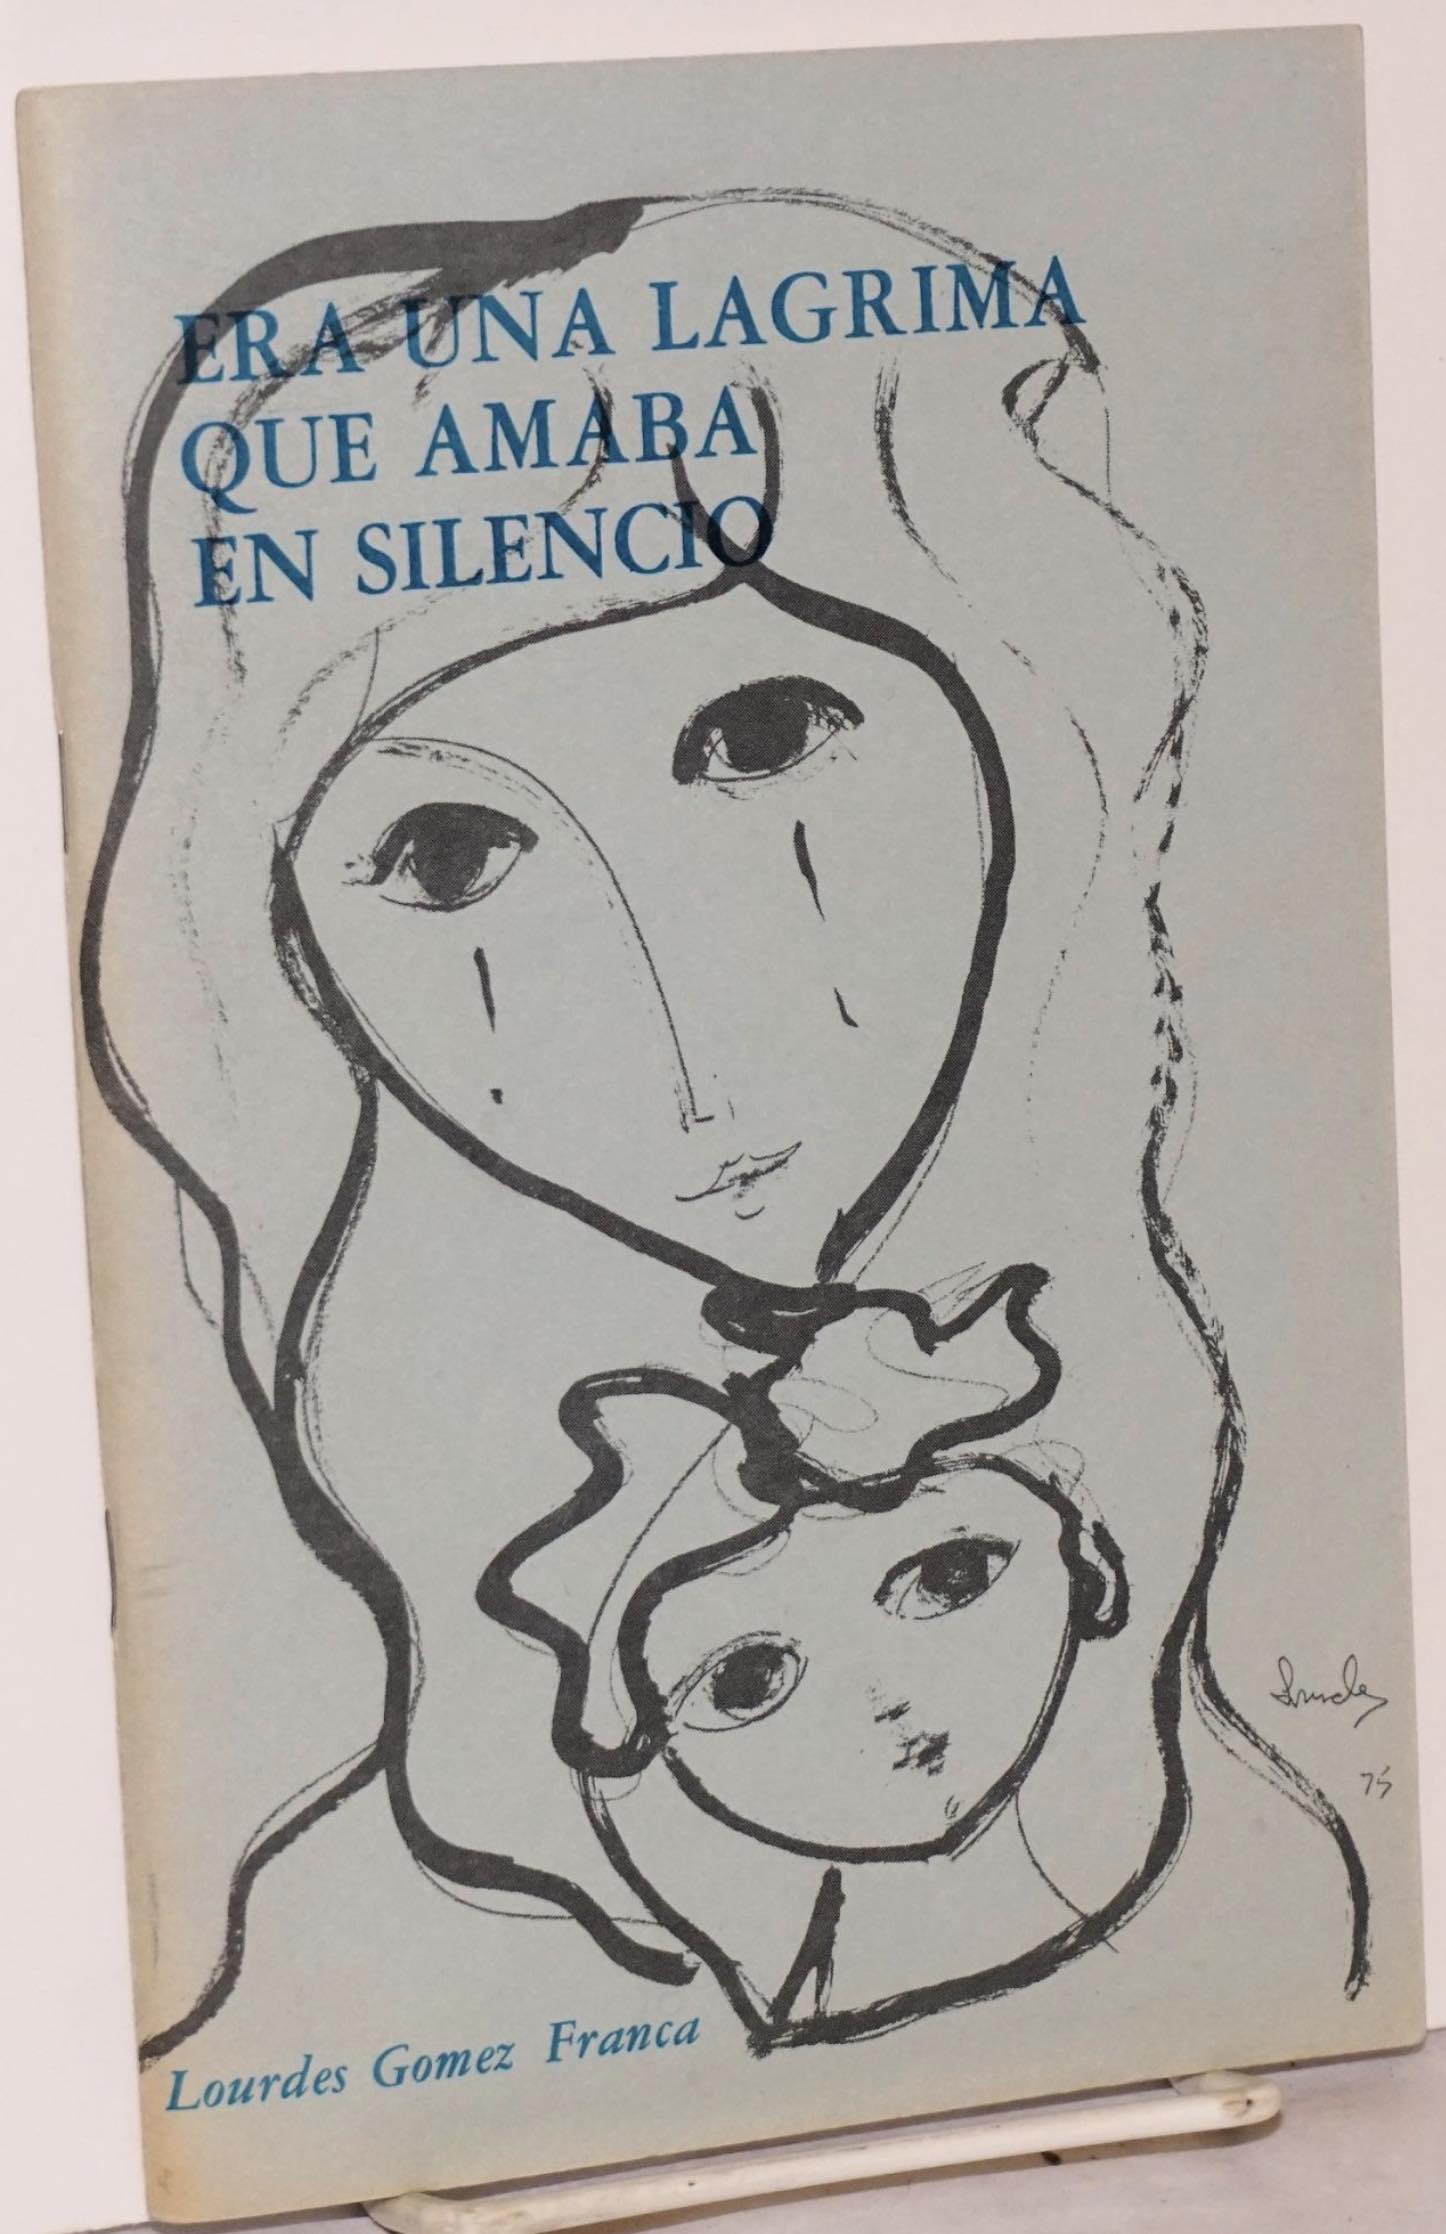 Lourdes Gomez Franca's publication